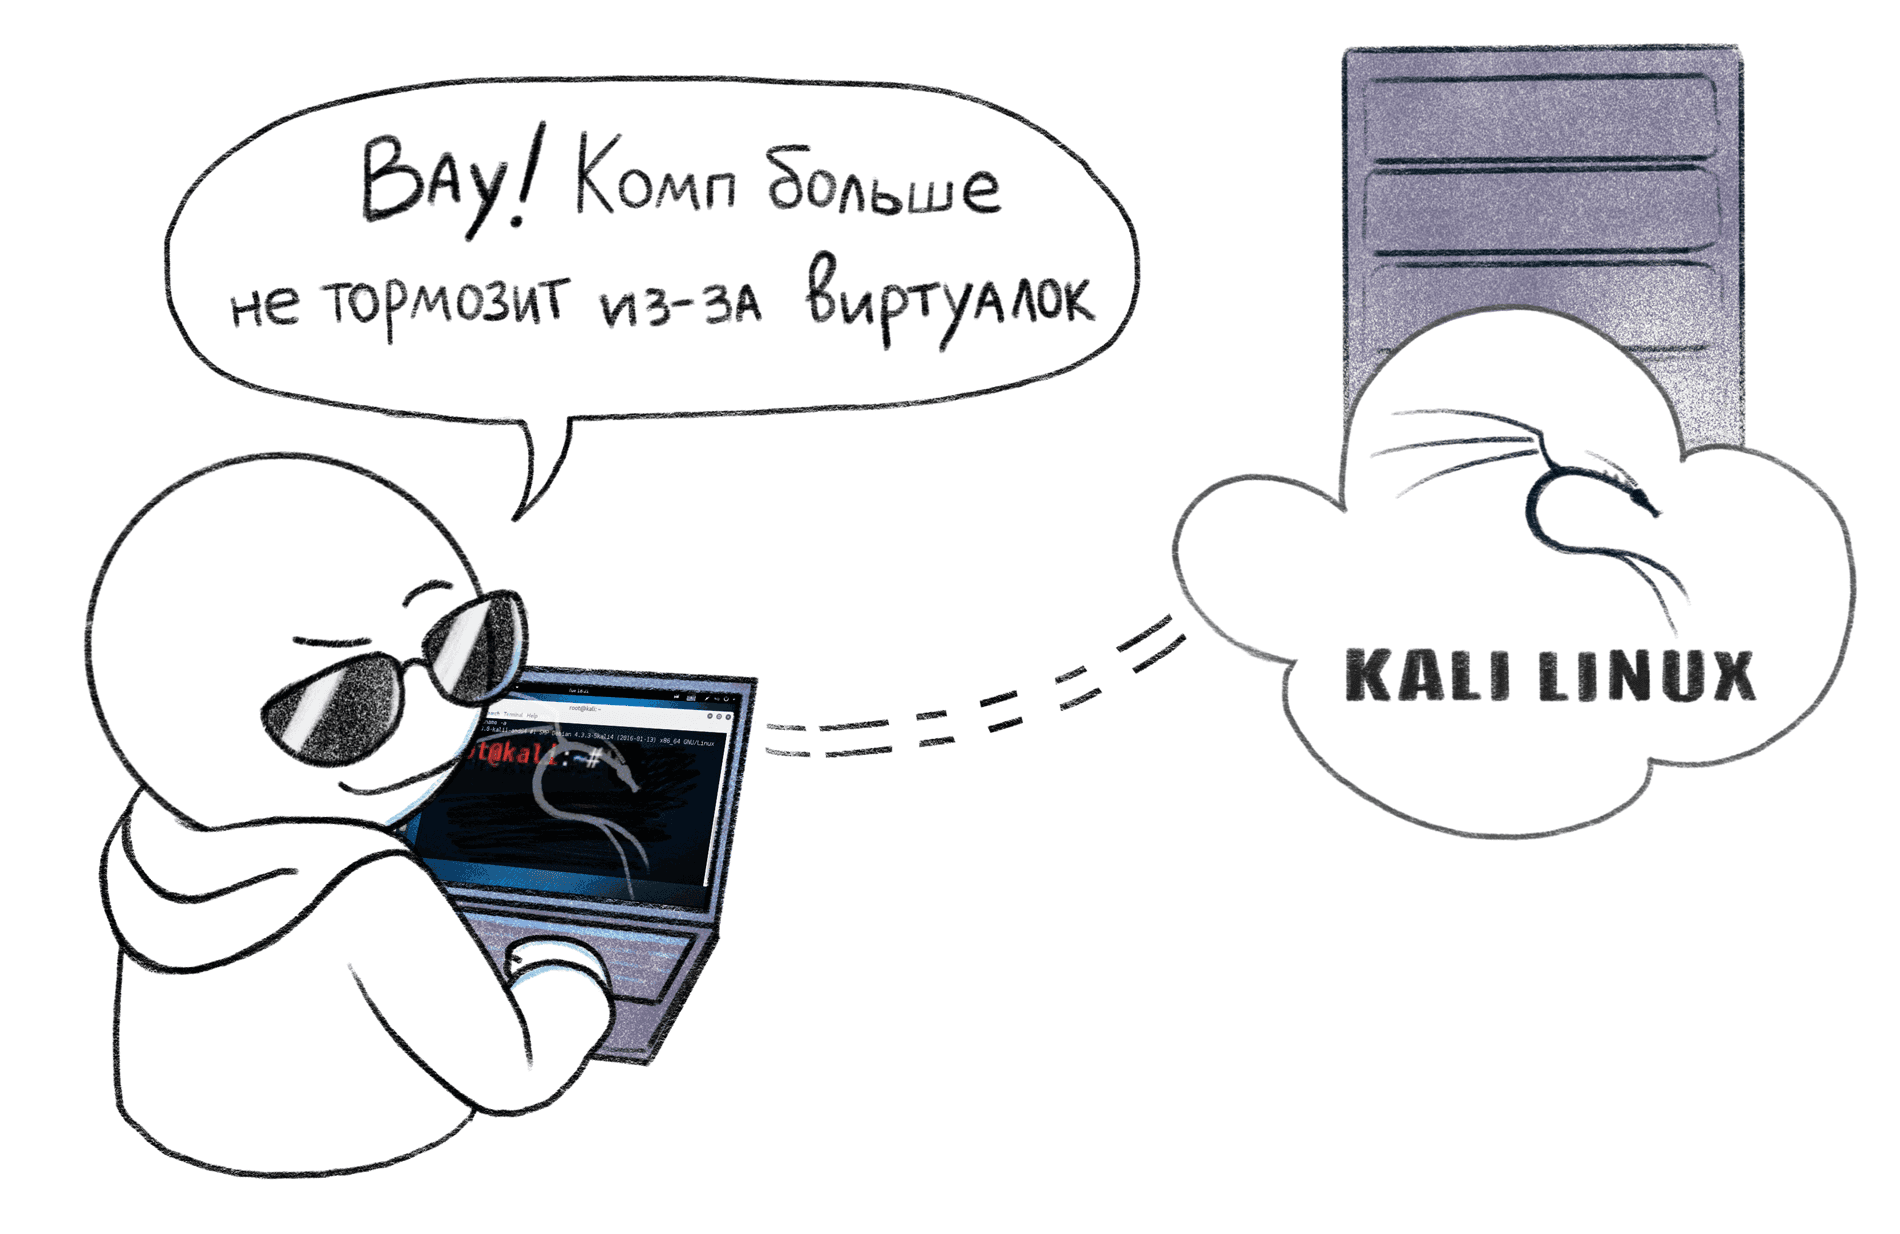 Устанавливаем Kali Linux с графическим интерфейсом на виртуальный сервер - 1